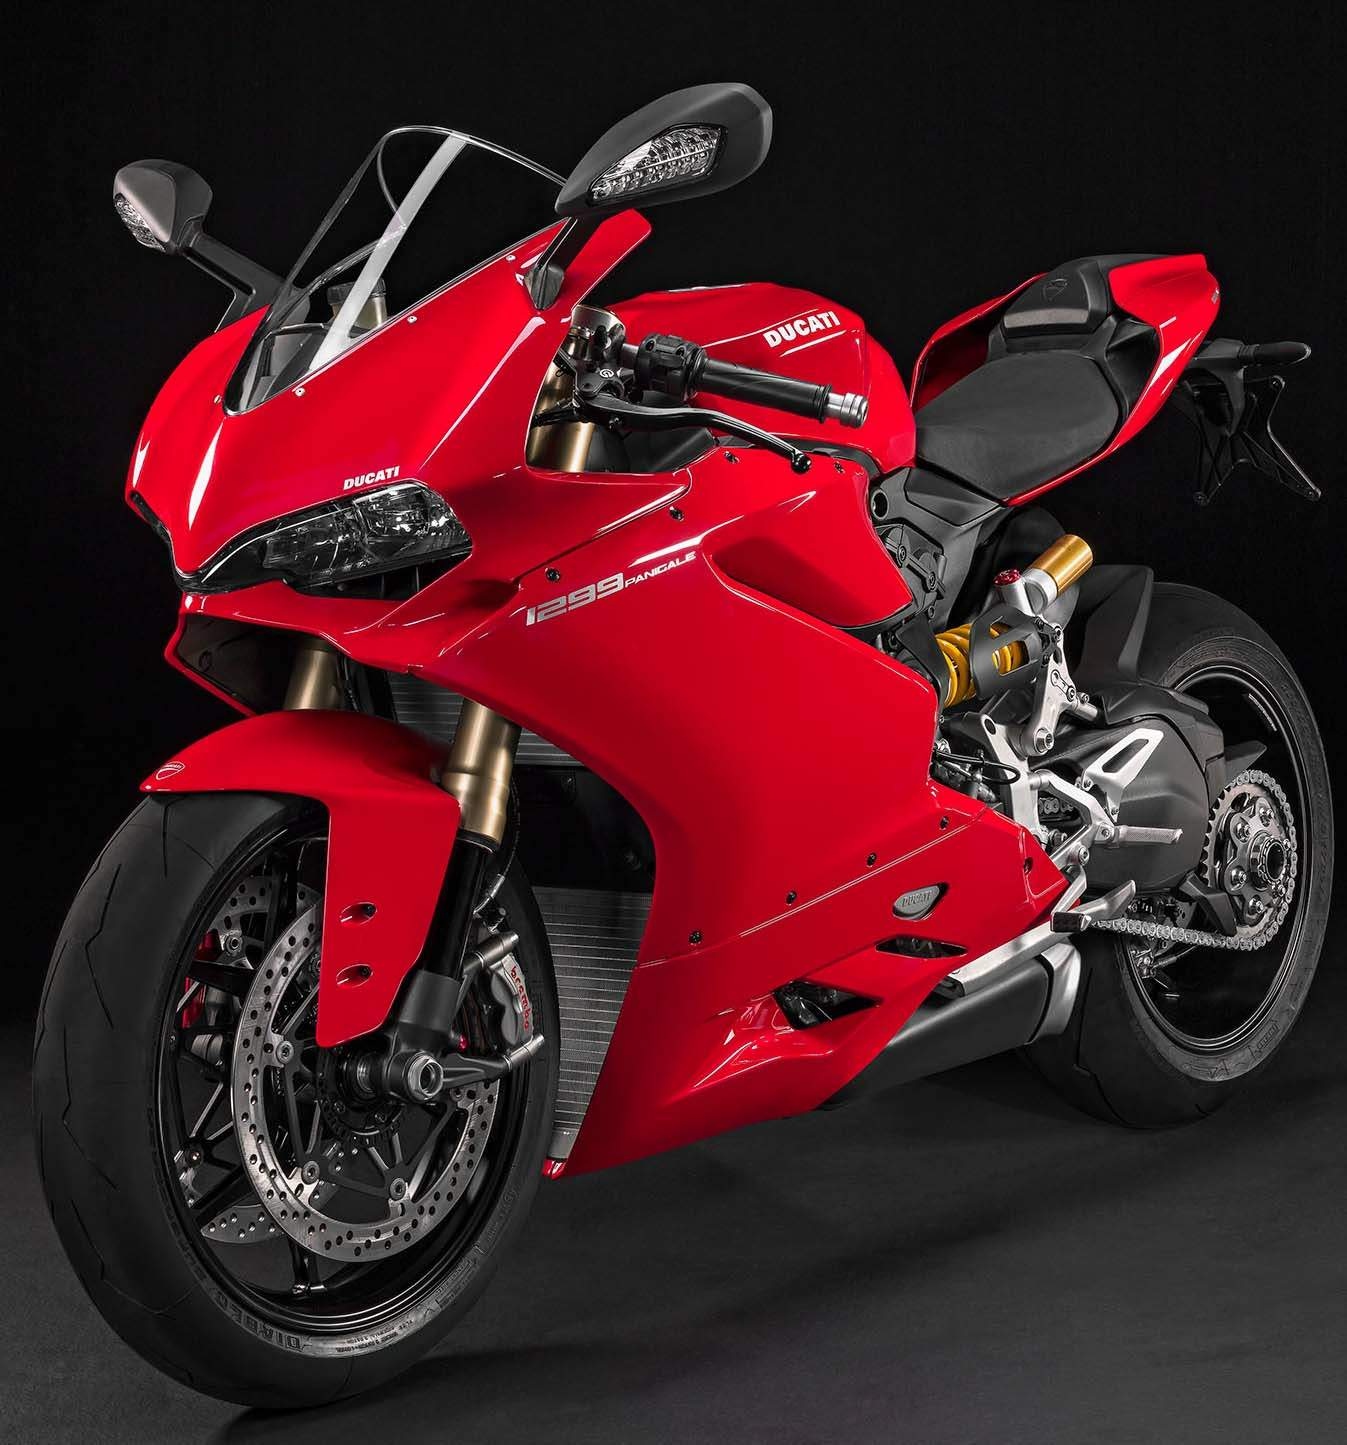 Ducati%201299%20Panigale%2015%20%205.jpg